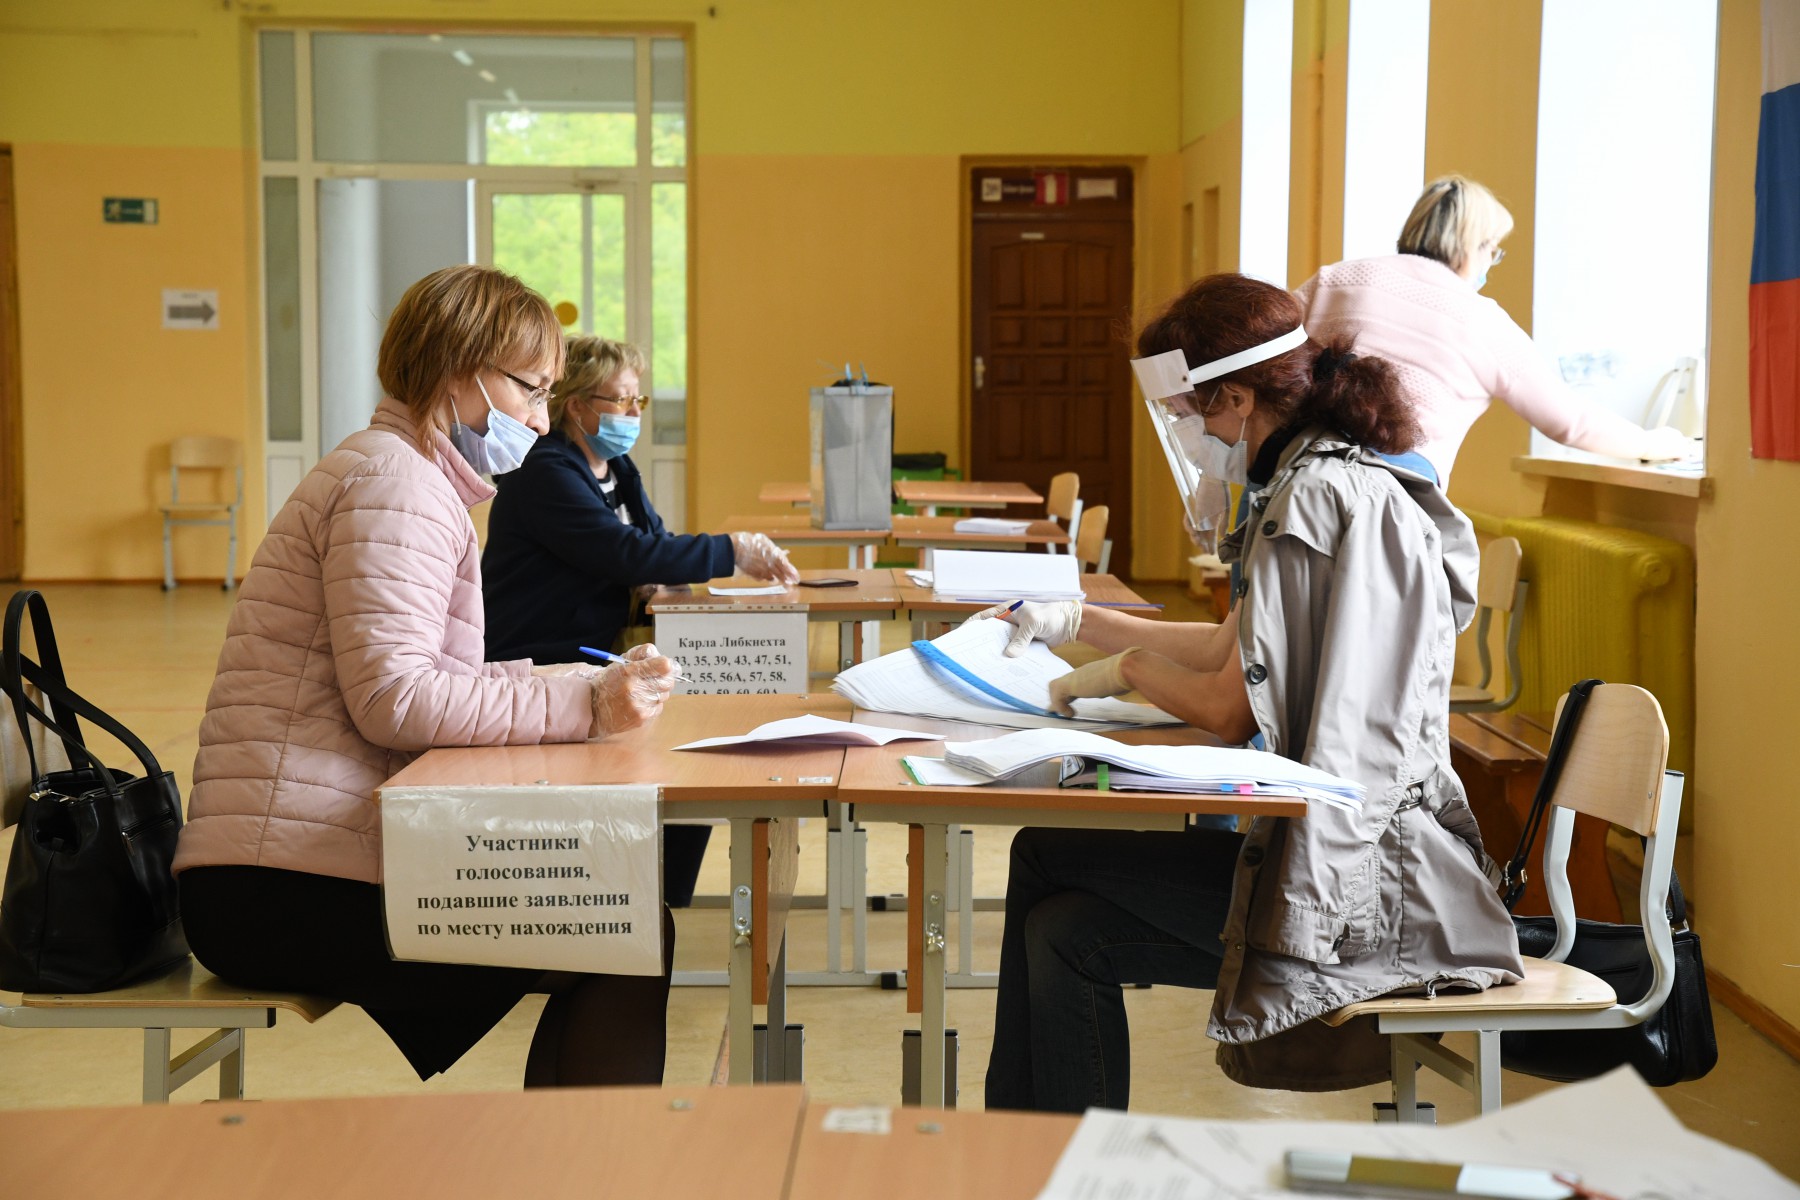 В школе №29 можно голосовать как по прописке, так и по заявлению о голосовании по месту нахождения. Фото Владимира Коцюбы-Белых